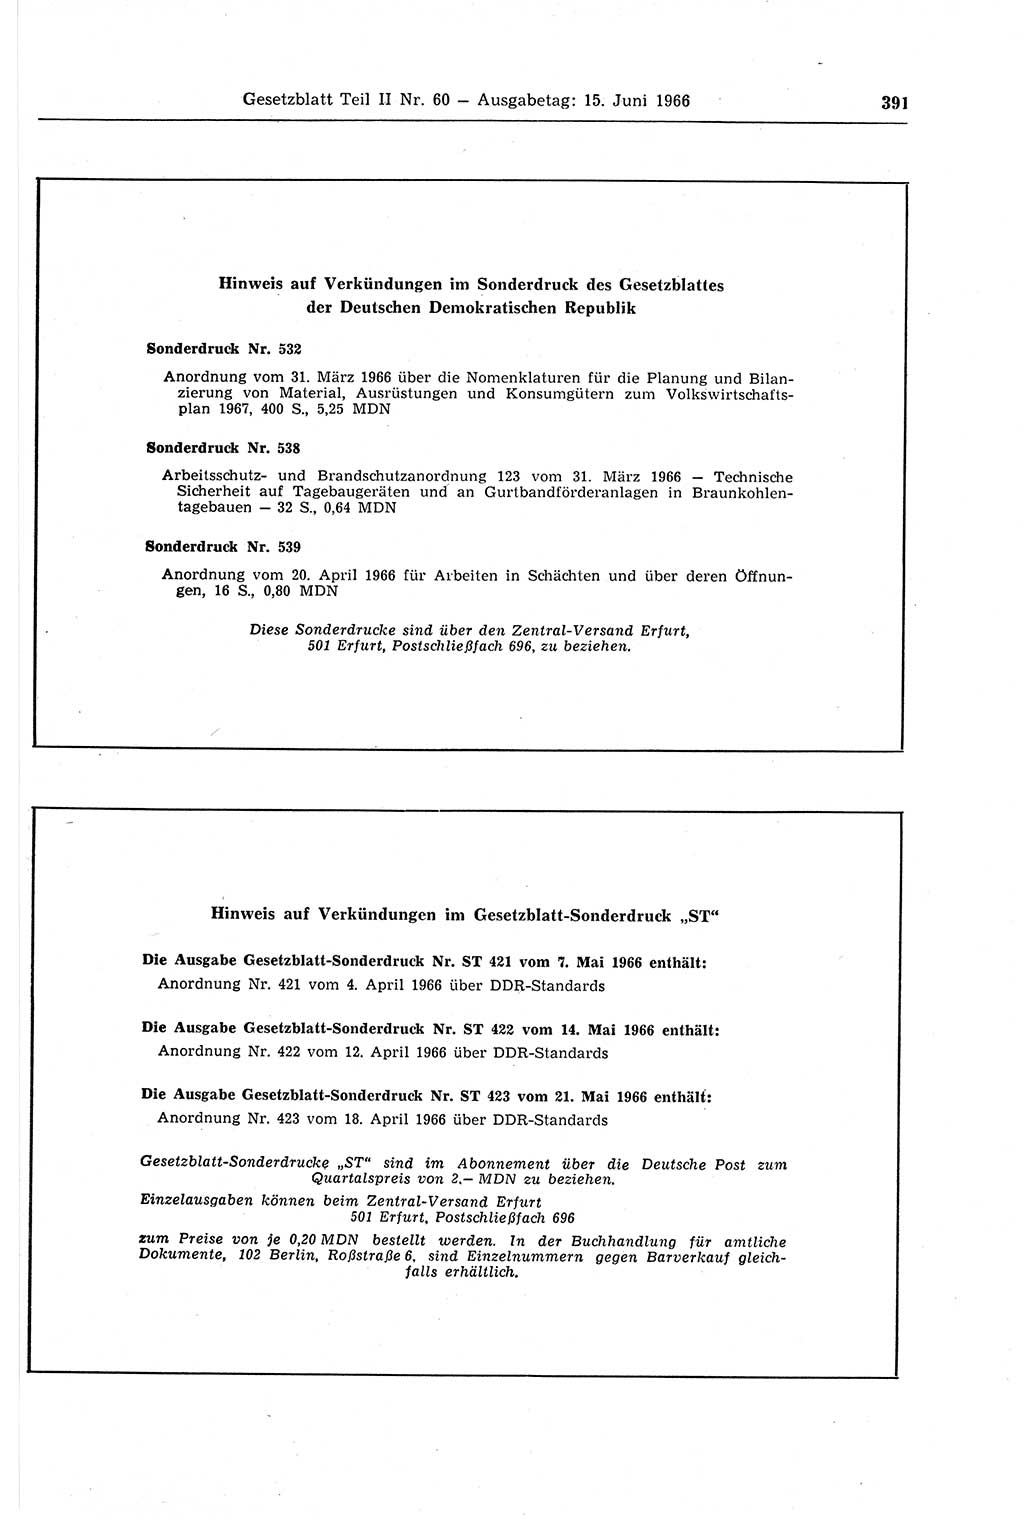 Gesetzblatt (GBl.) der Deutschen Demokratischen Republik (DDR) Teil ⅠⅠ 1966, Seite 391 (GBl. DDR ⅠⅠ 1966, S. 391)